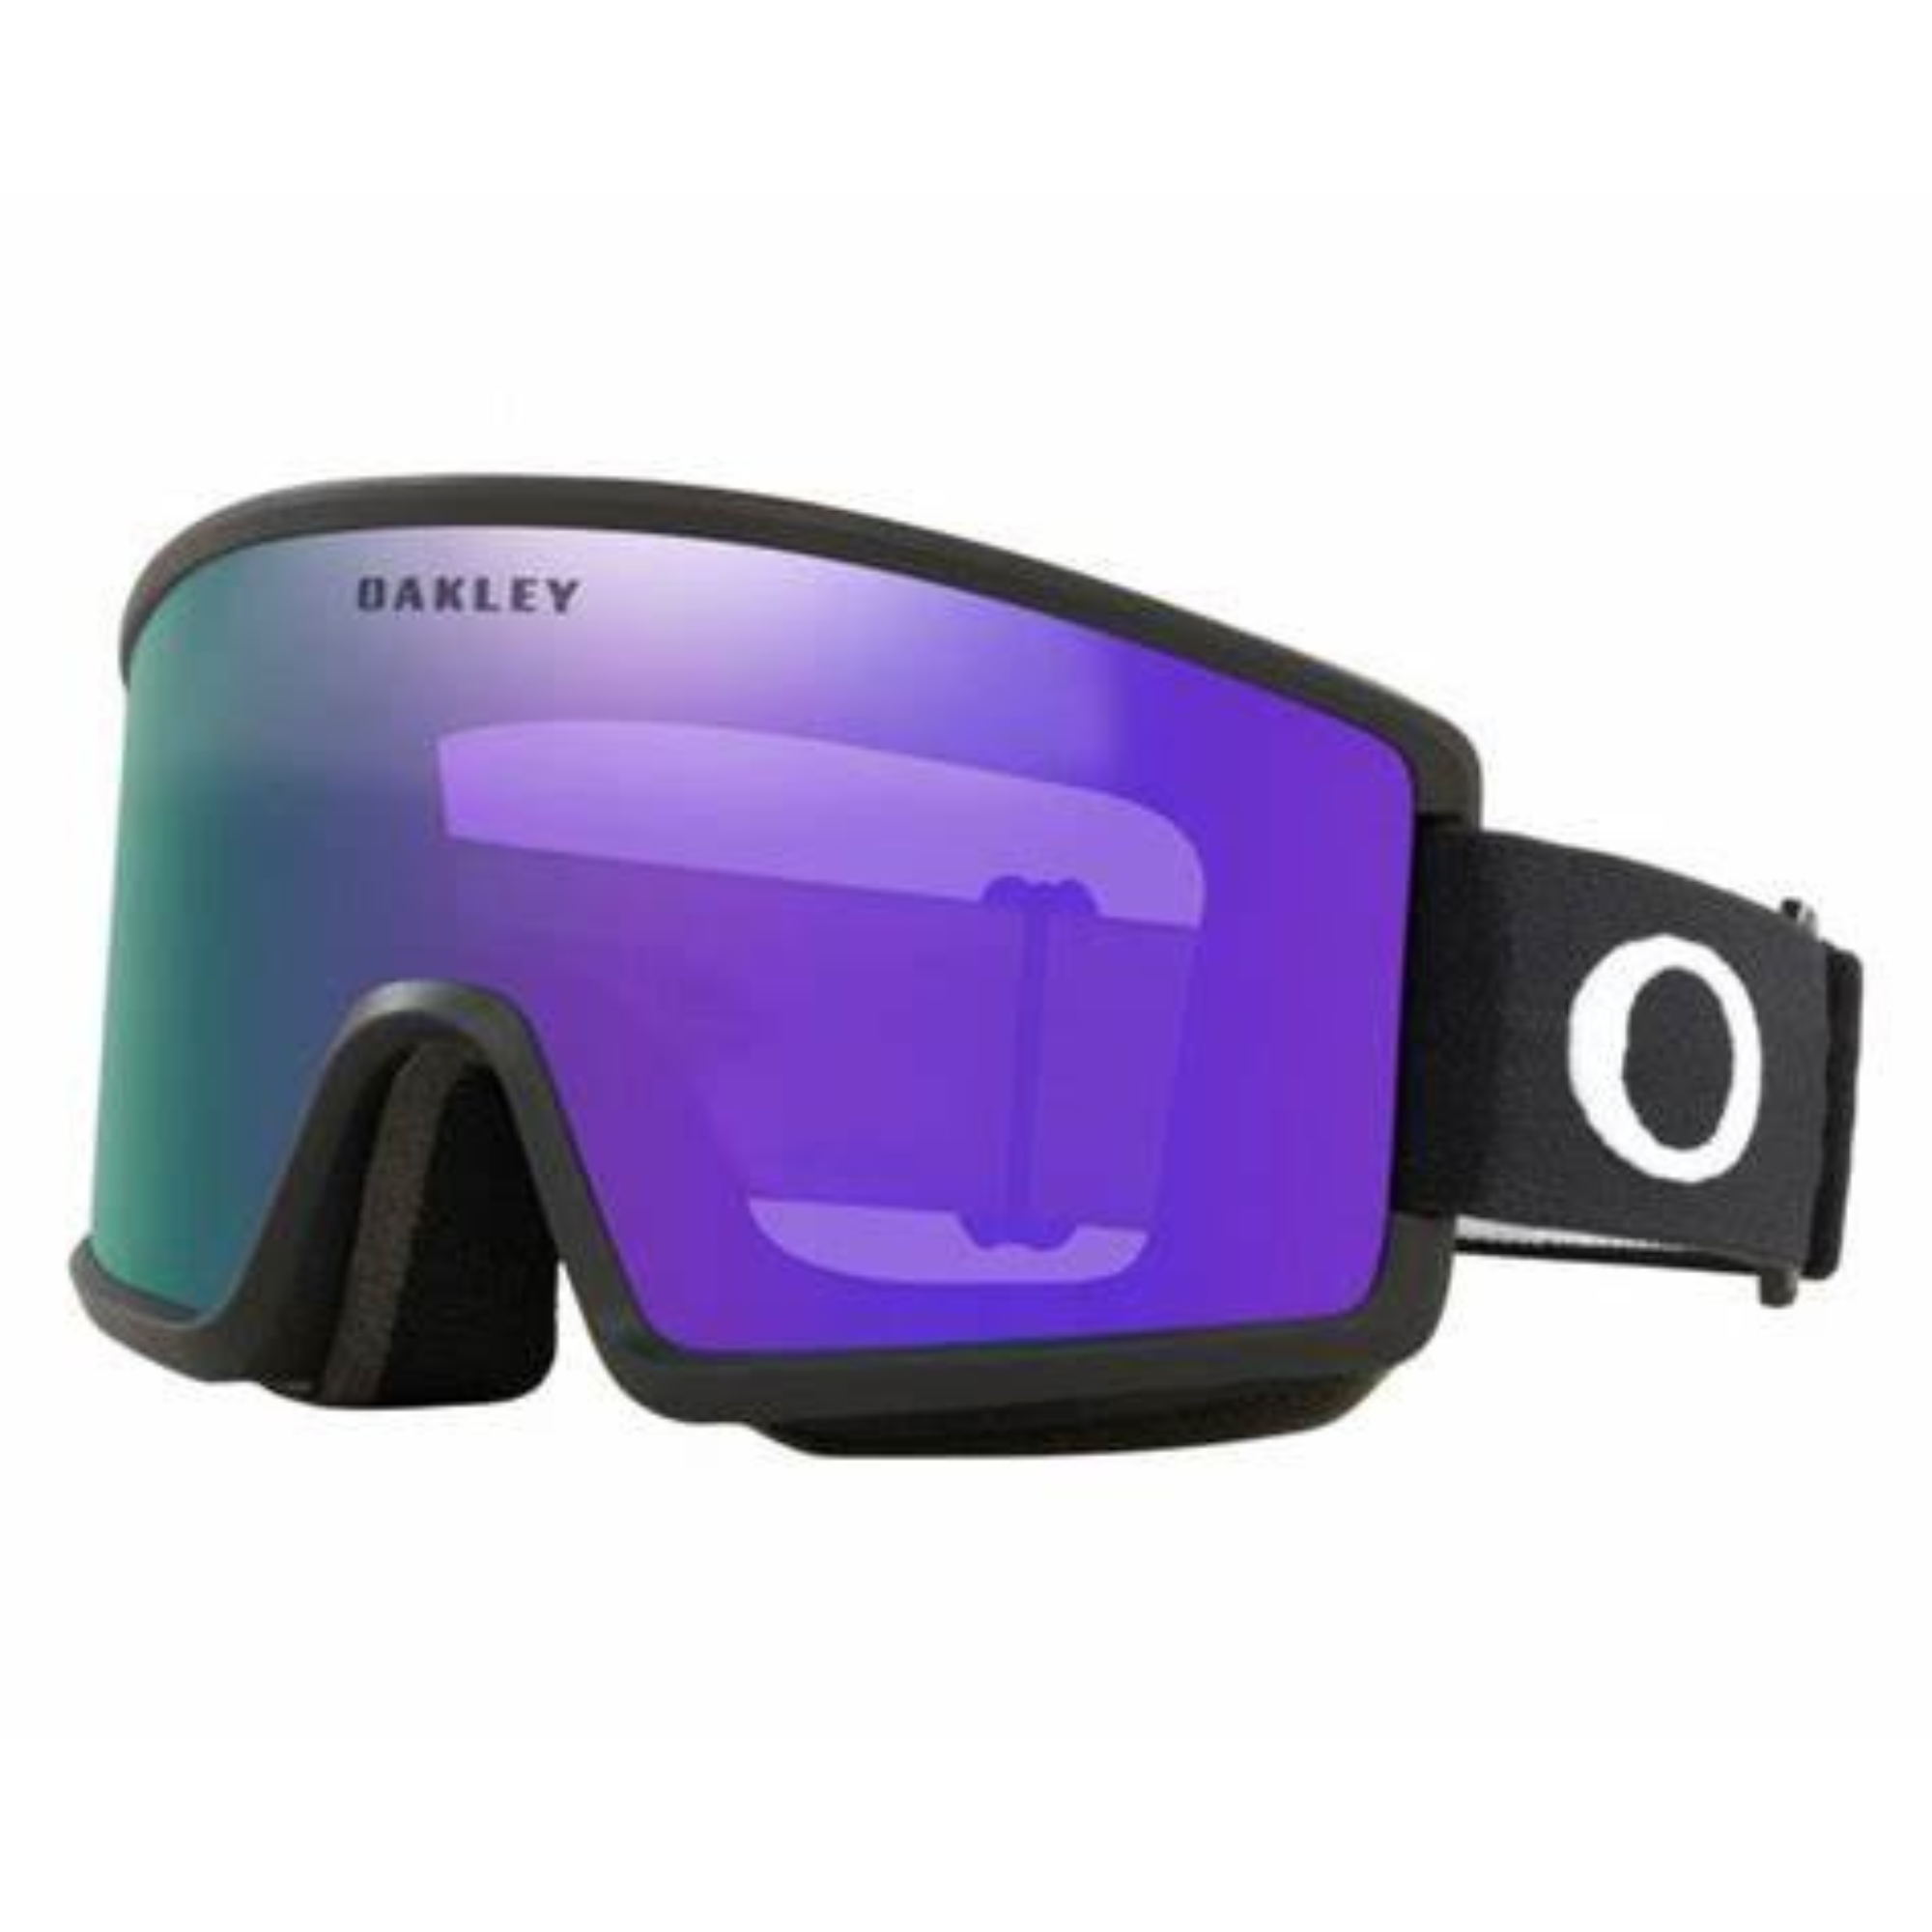 Oakley Target Line M Goggles - Matte Black / Violet